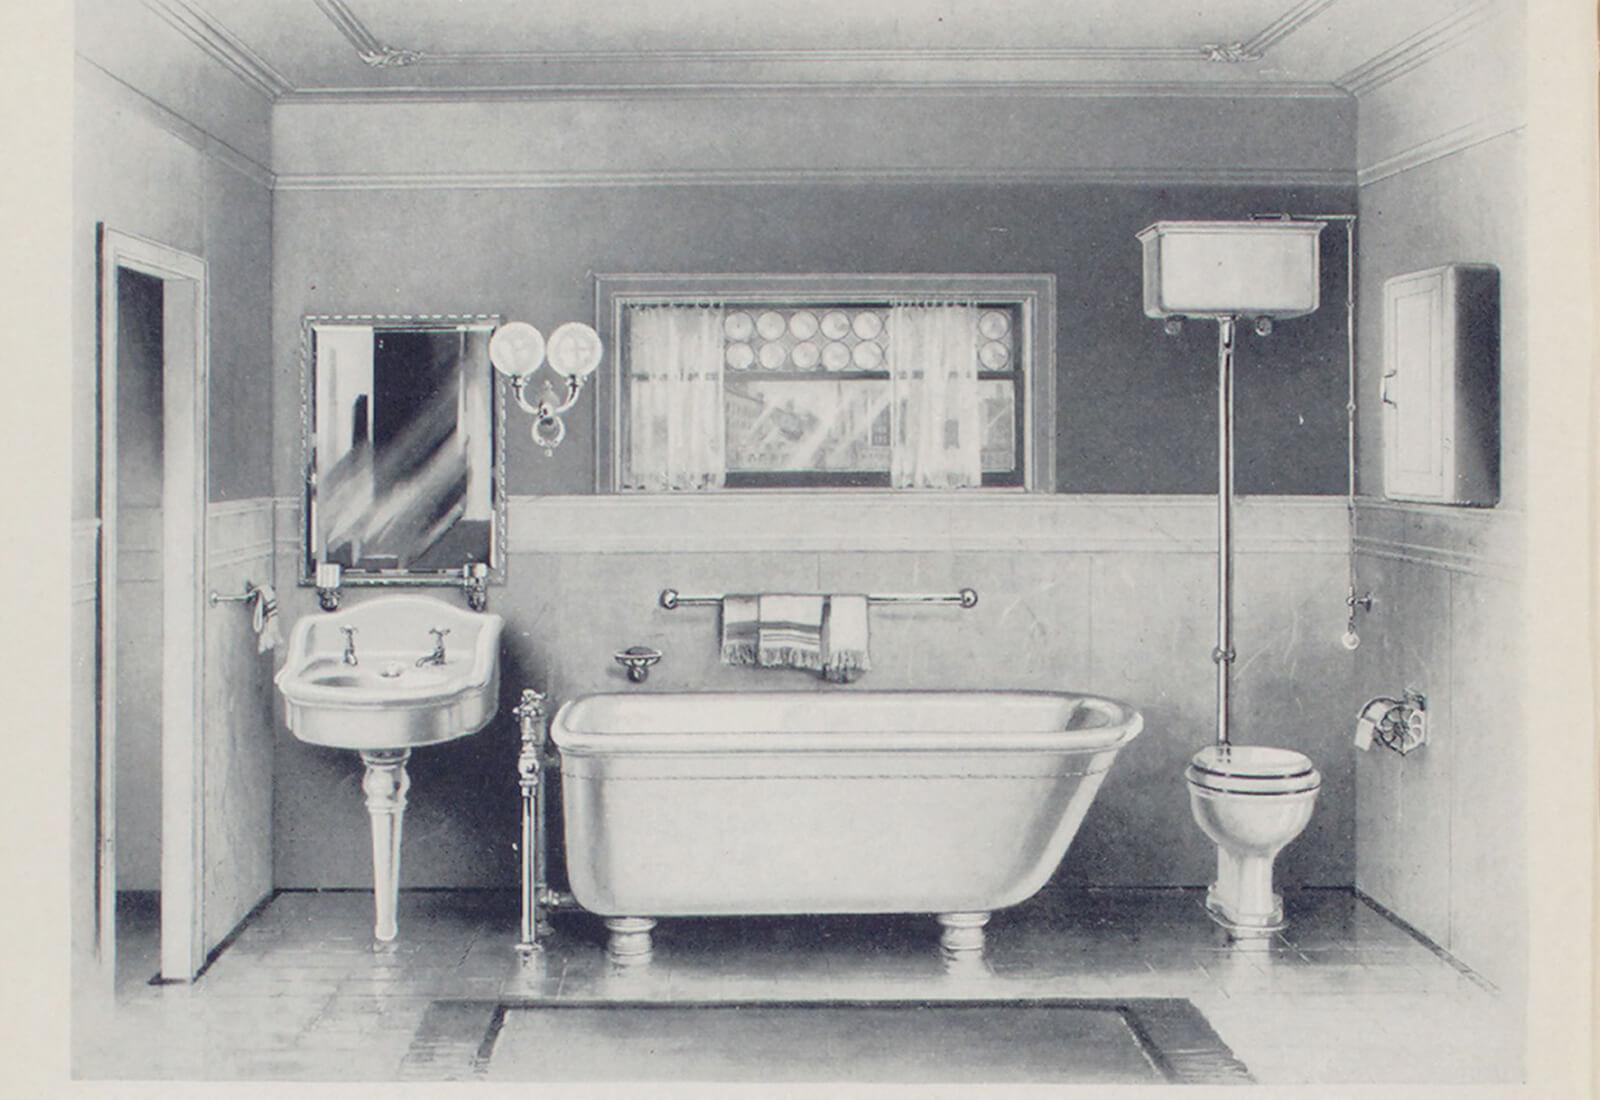 Revolución en el baño: inventaron el primer bidet portátil del mundo